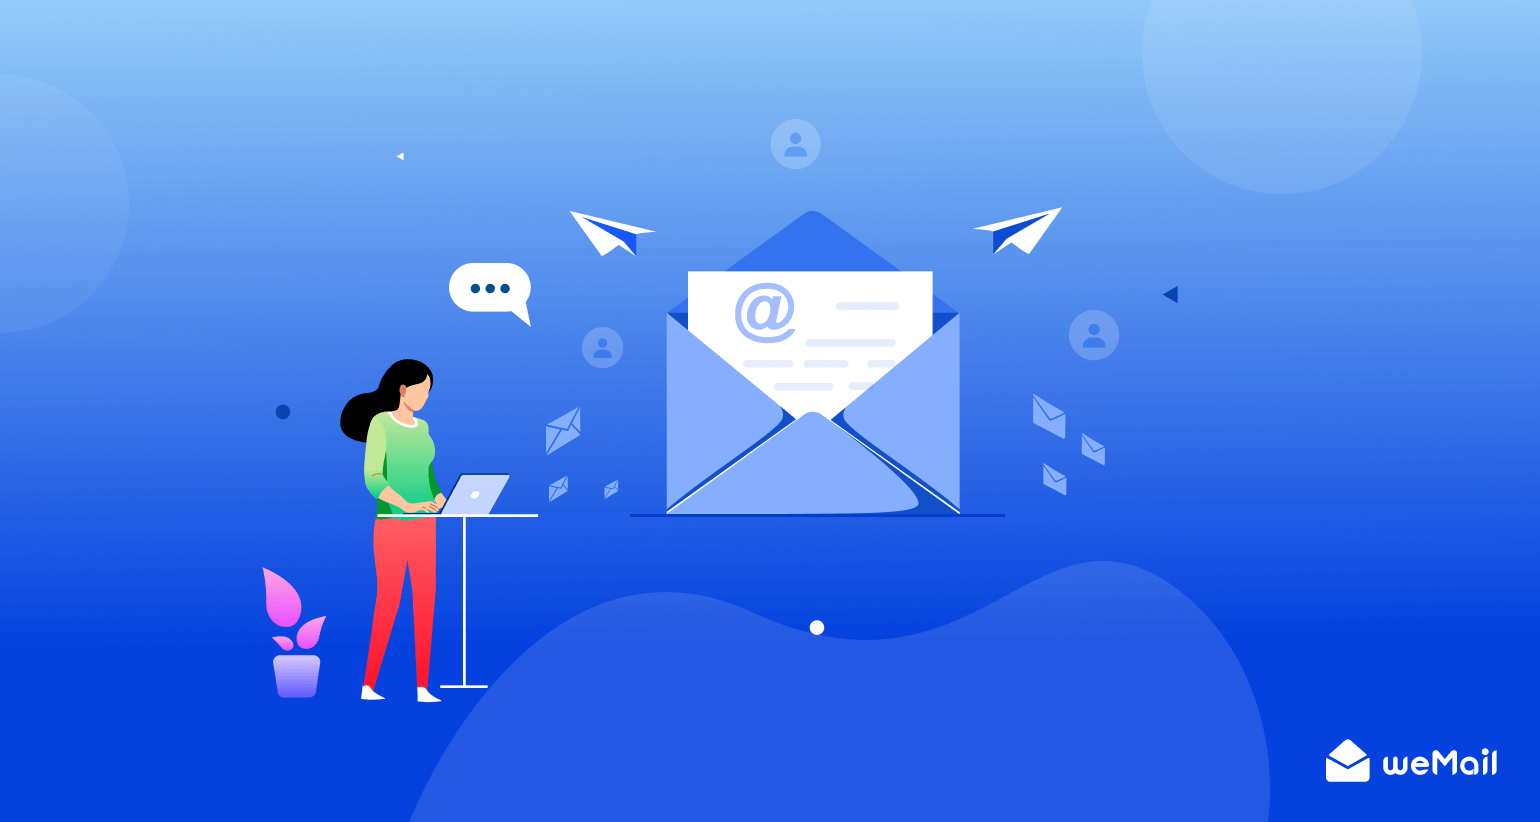 이메일 자동화 트리거란 무엇입니까?